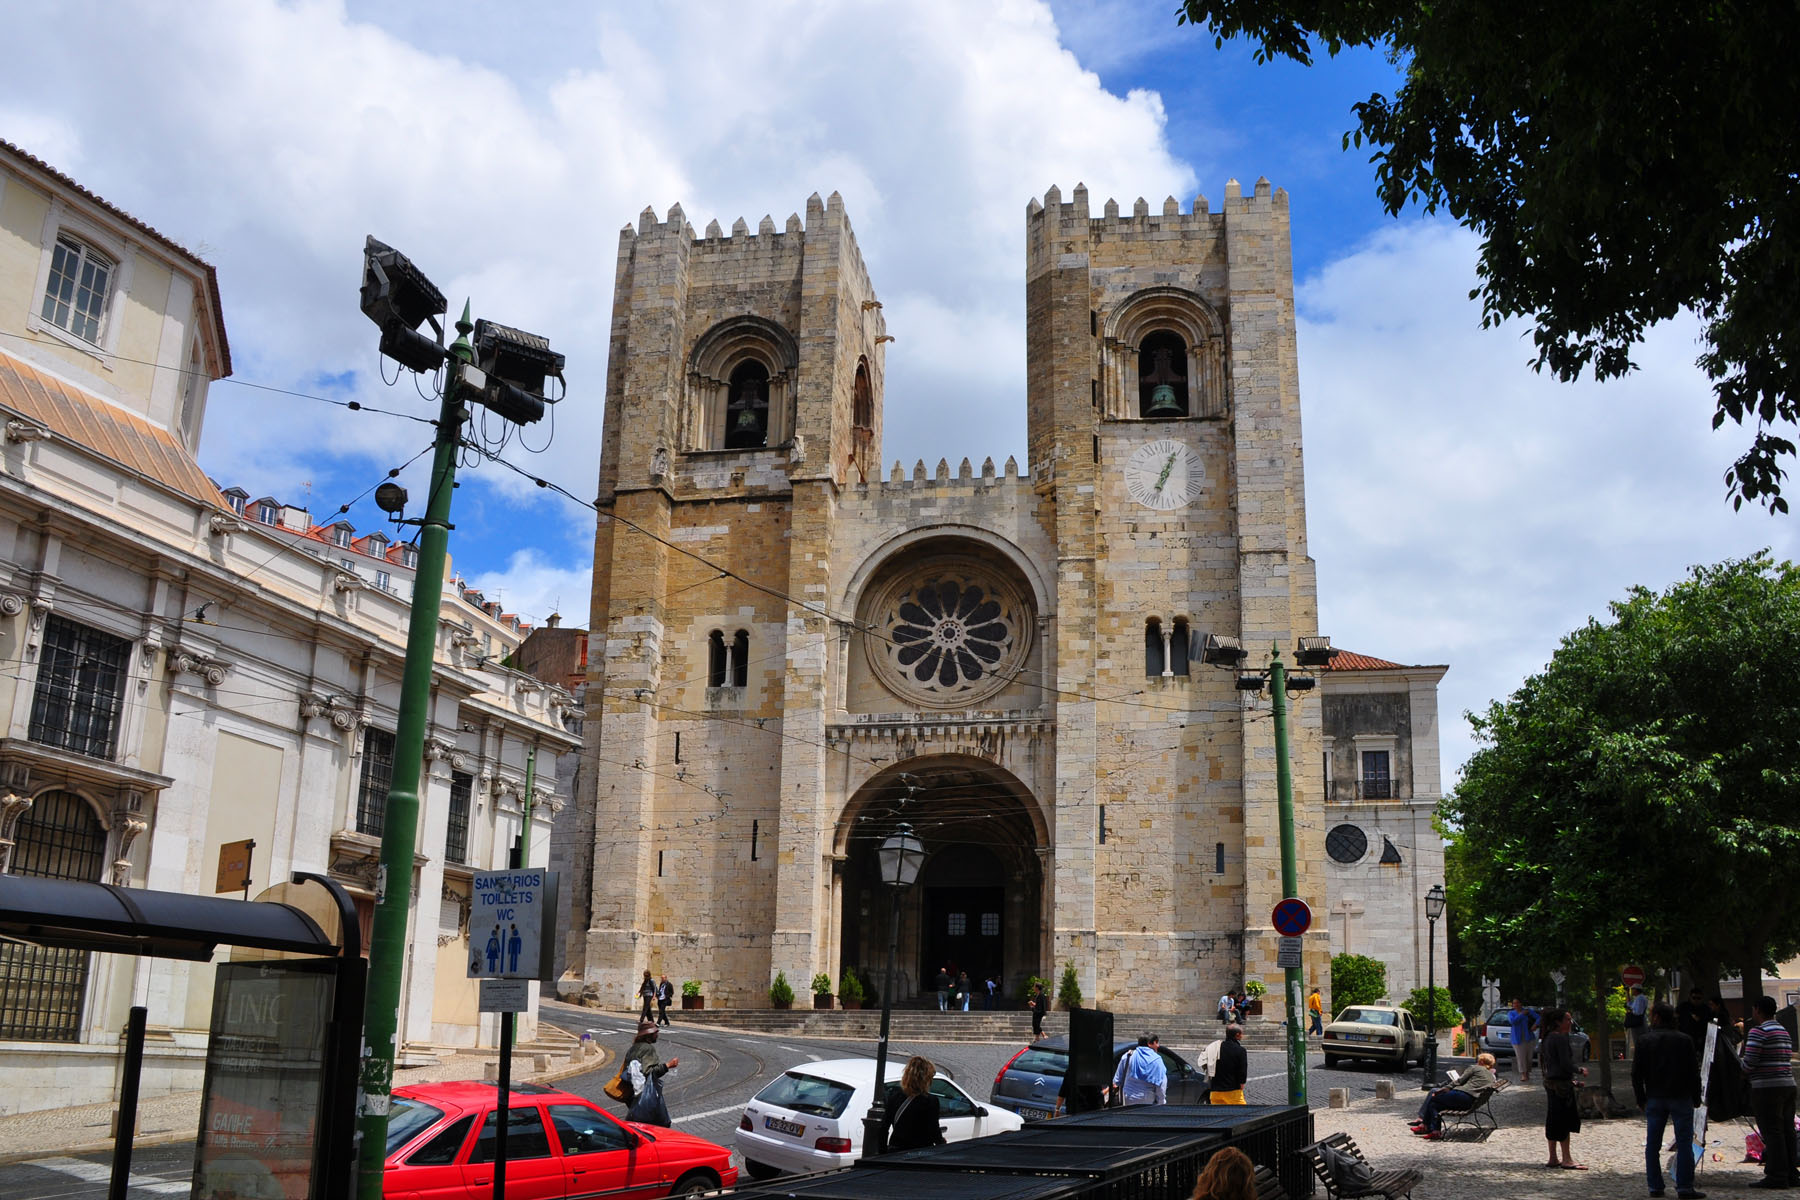 Lisbon Cathedral (Santa Maria Maior)